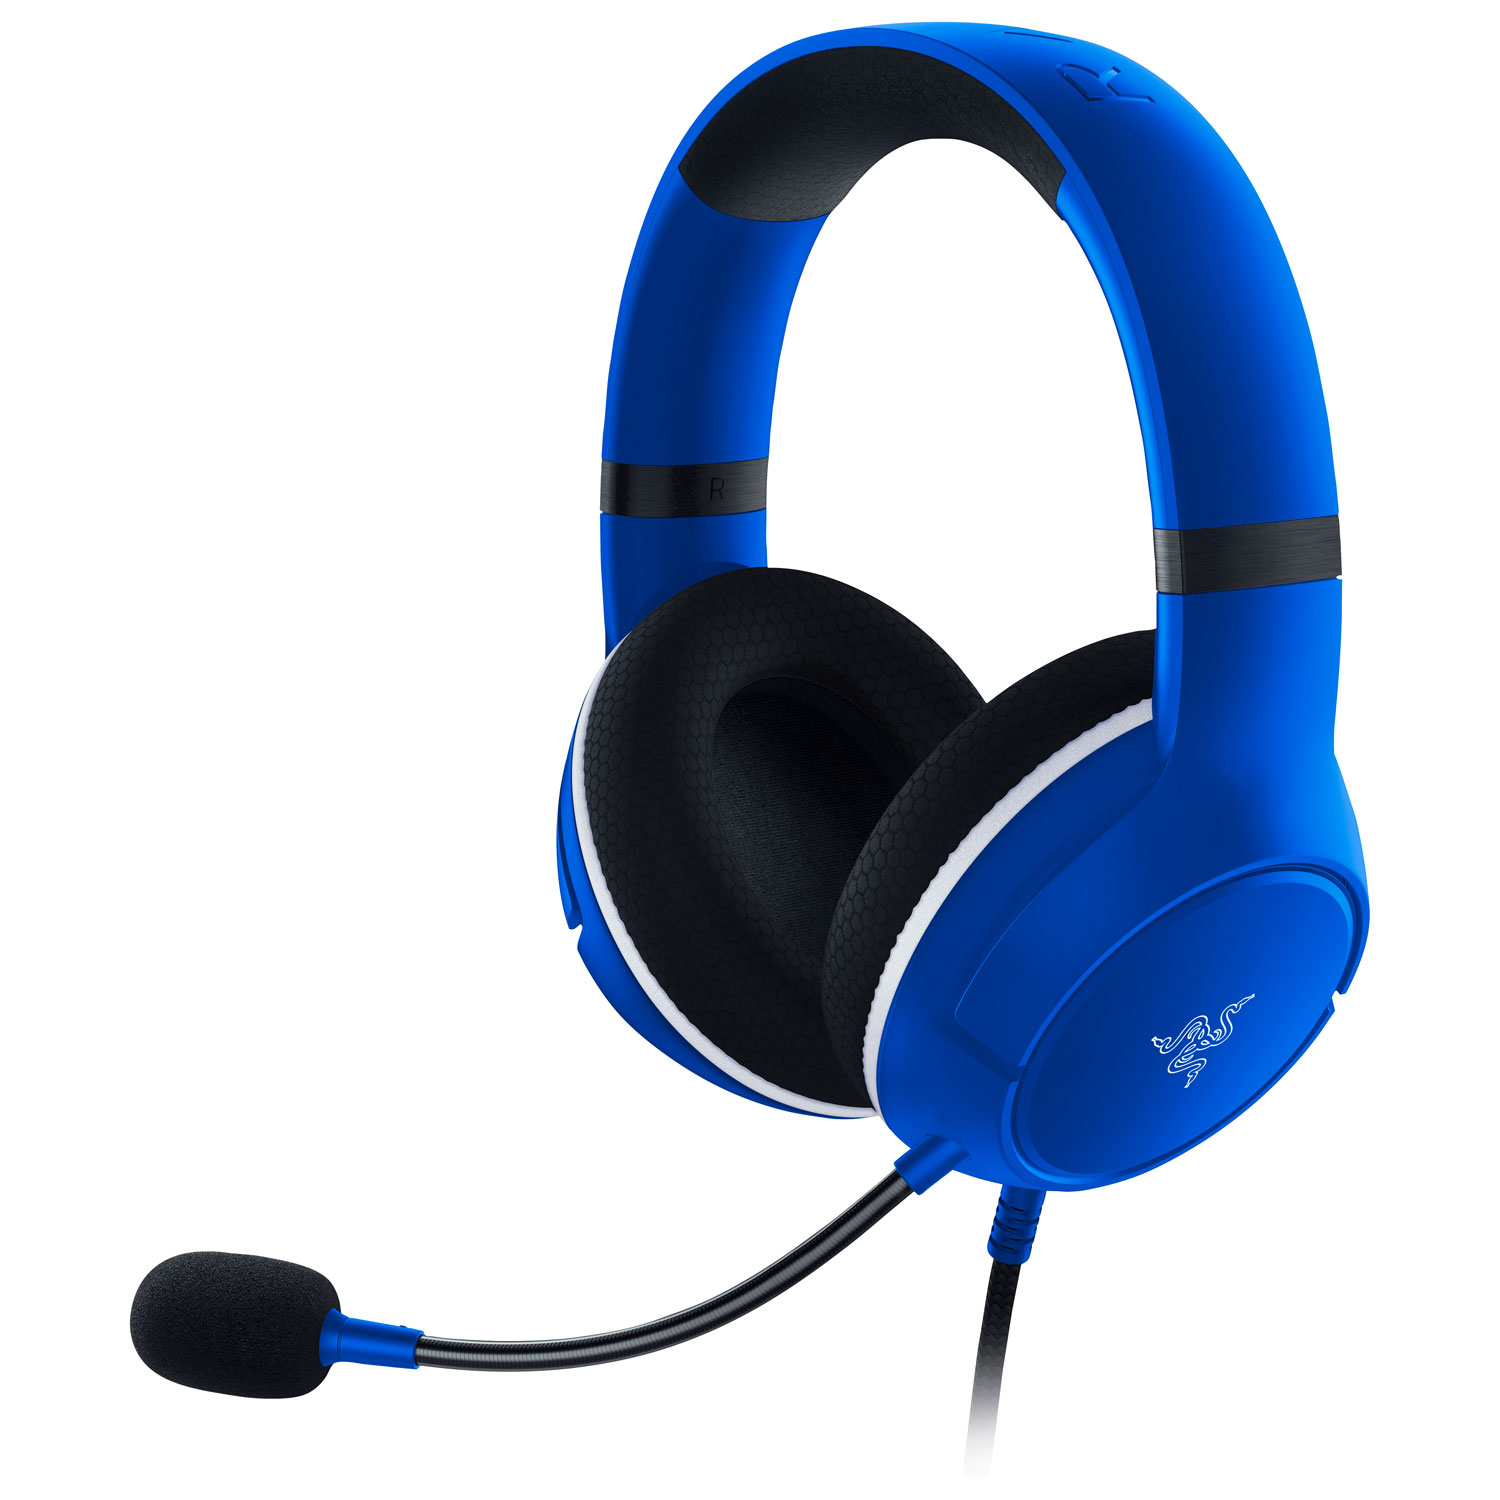 Razer Kaira X Gaming Headset for Xbox Series X|S - Blue